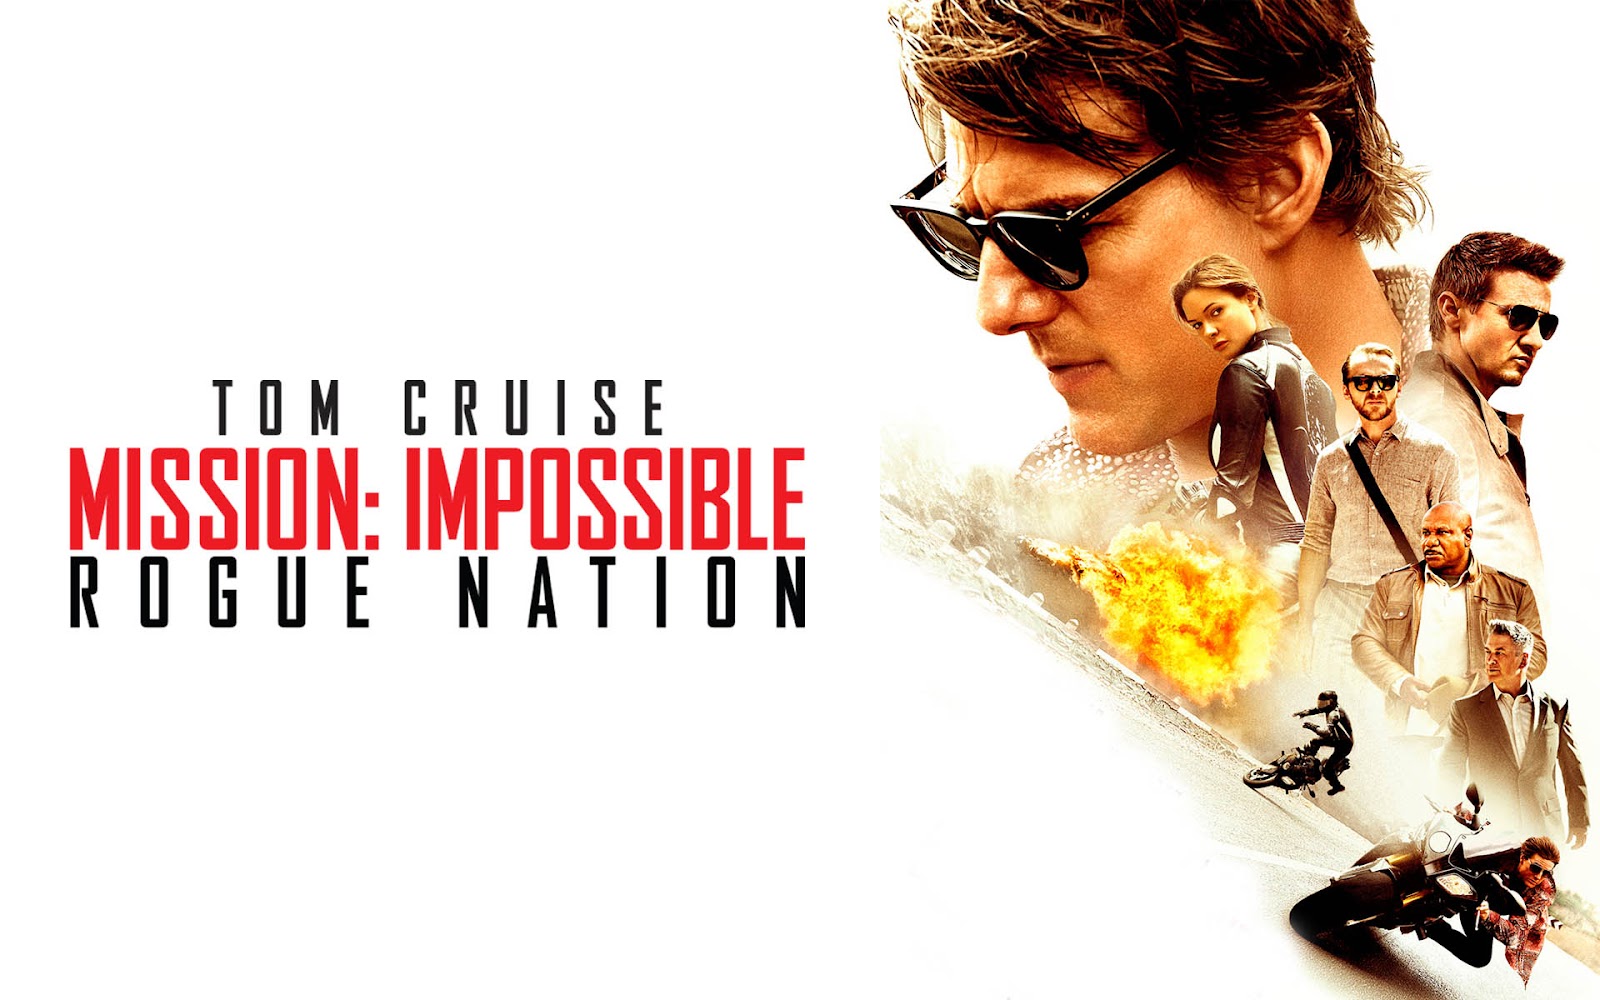 Η ταινία της ημέρας: Mission Impossible 5: Rogue Nation